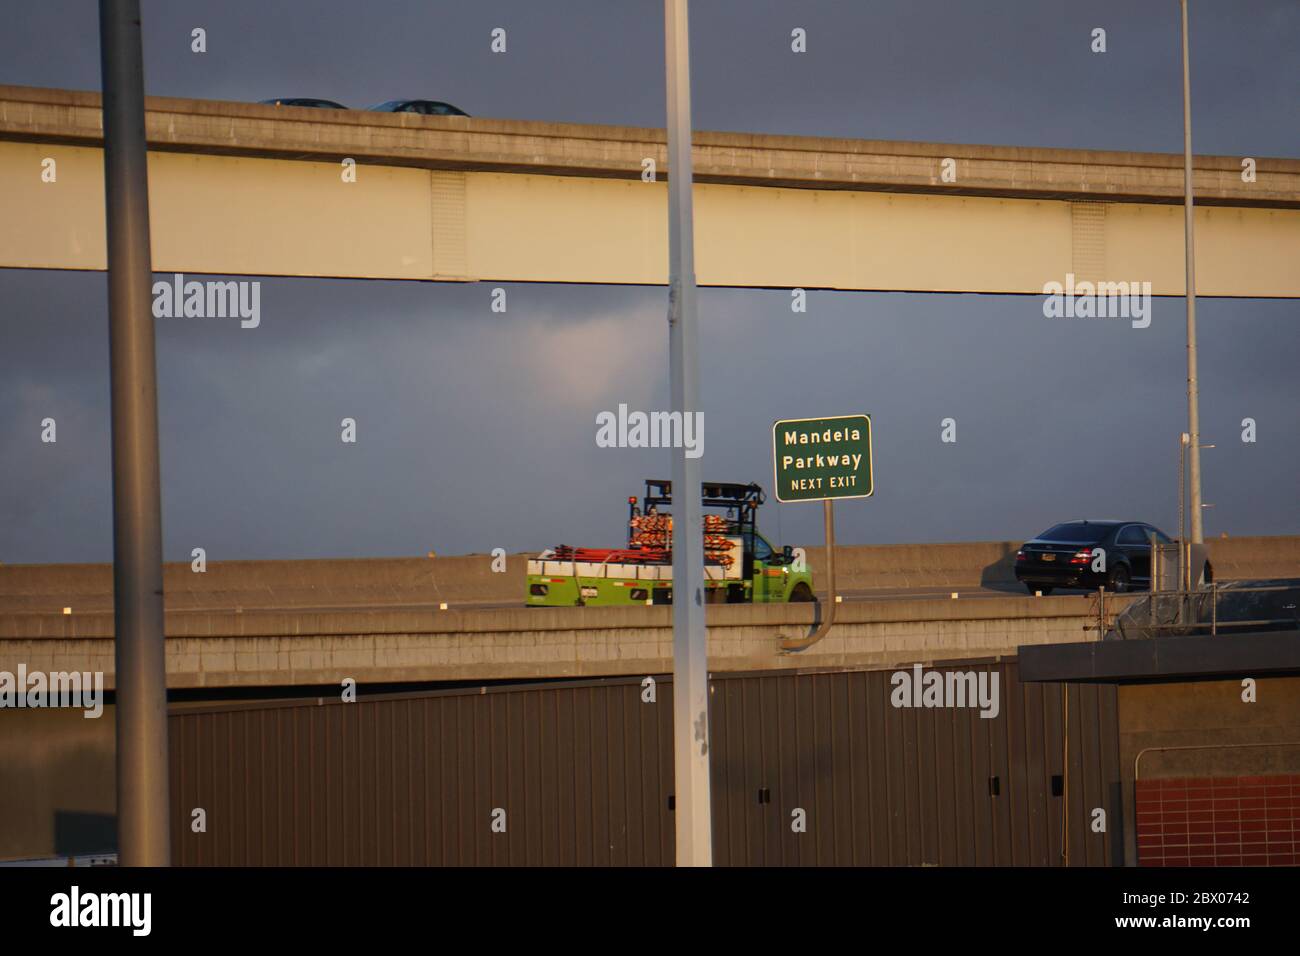 Camions et voitures sur la voie publique avec le panneau vert Next Exit pour Mandela Parkway. Système de transport routier. West Oakland, Californie, États-Unis Banque D'Images